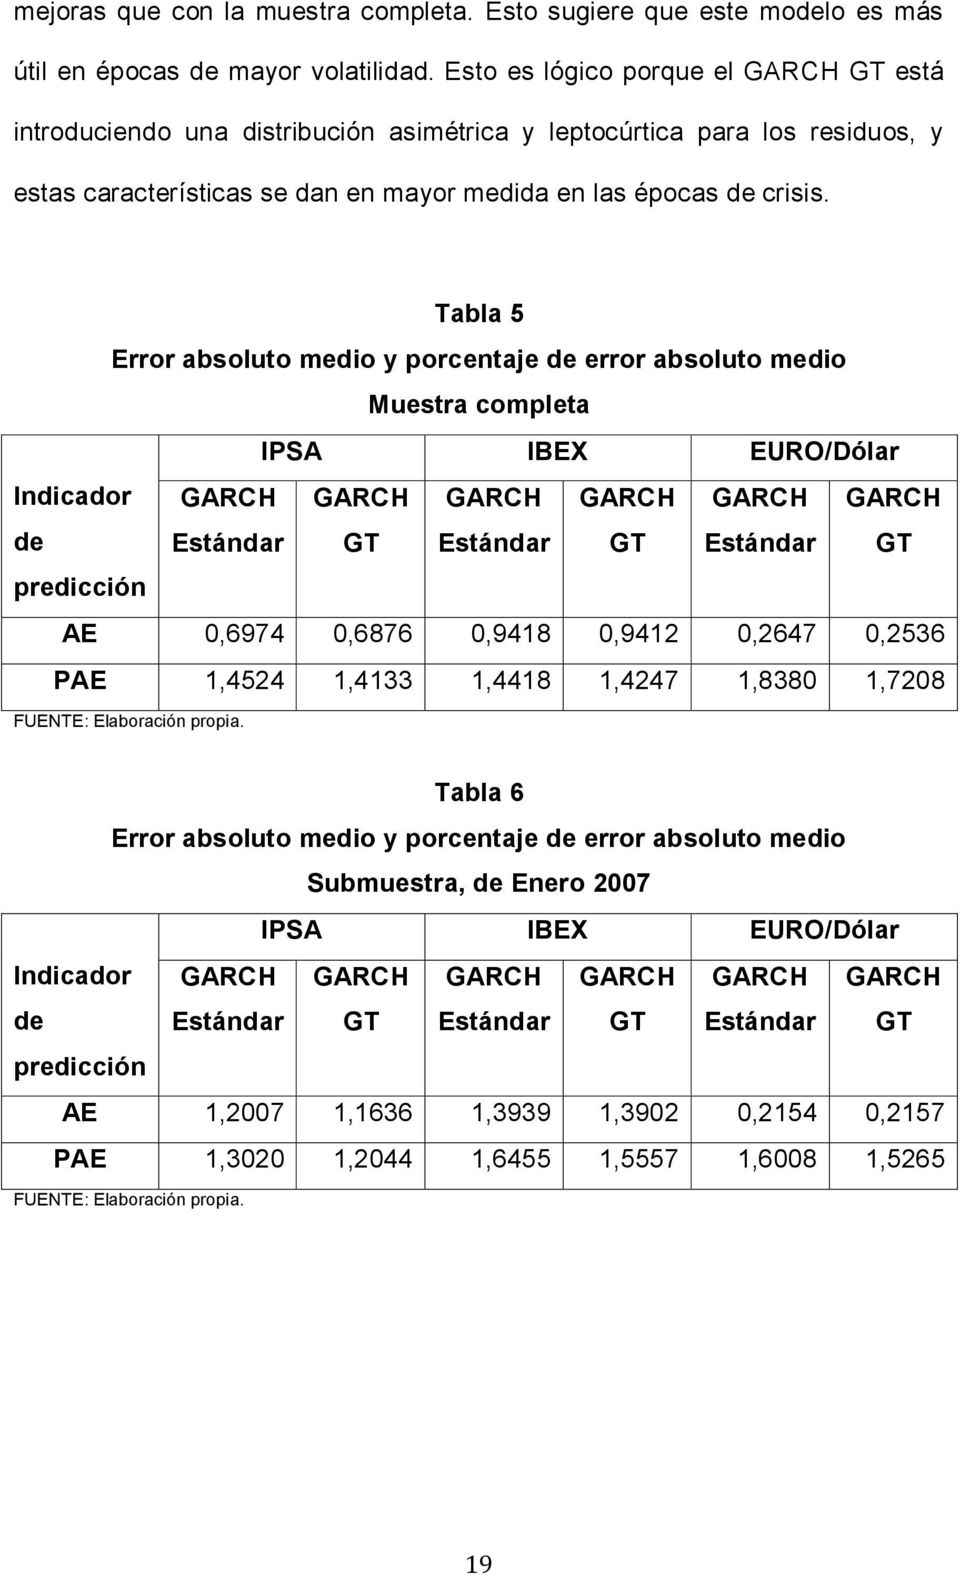 Tabla 5 Error absoluo medio y porcenaje de error absoluo medio Muesra complea IPSA IBEX EURO/Dólar Indicador de Esándar GT Esándar GT Esándar GT predicción AE 0,6974 0,6876 0,9418 0,941 0,647 0,536